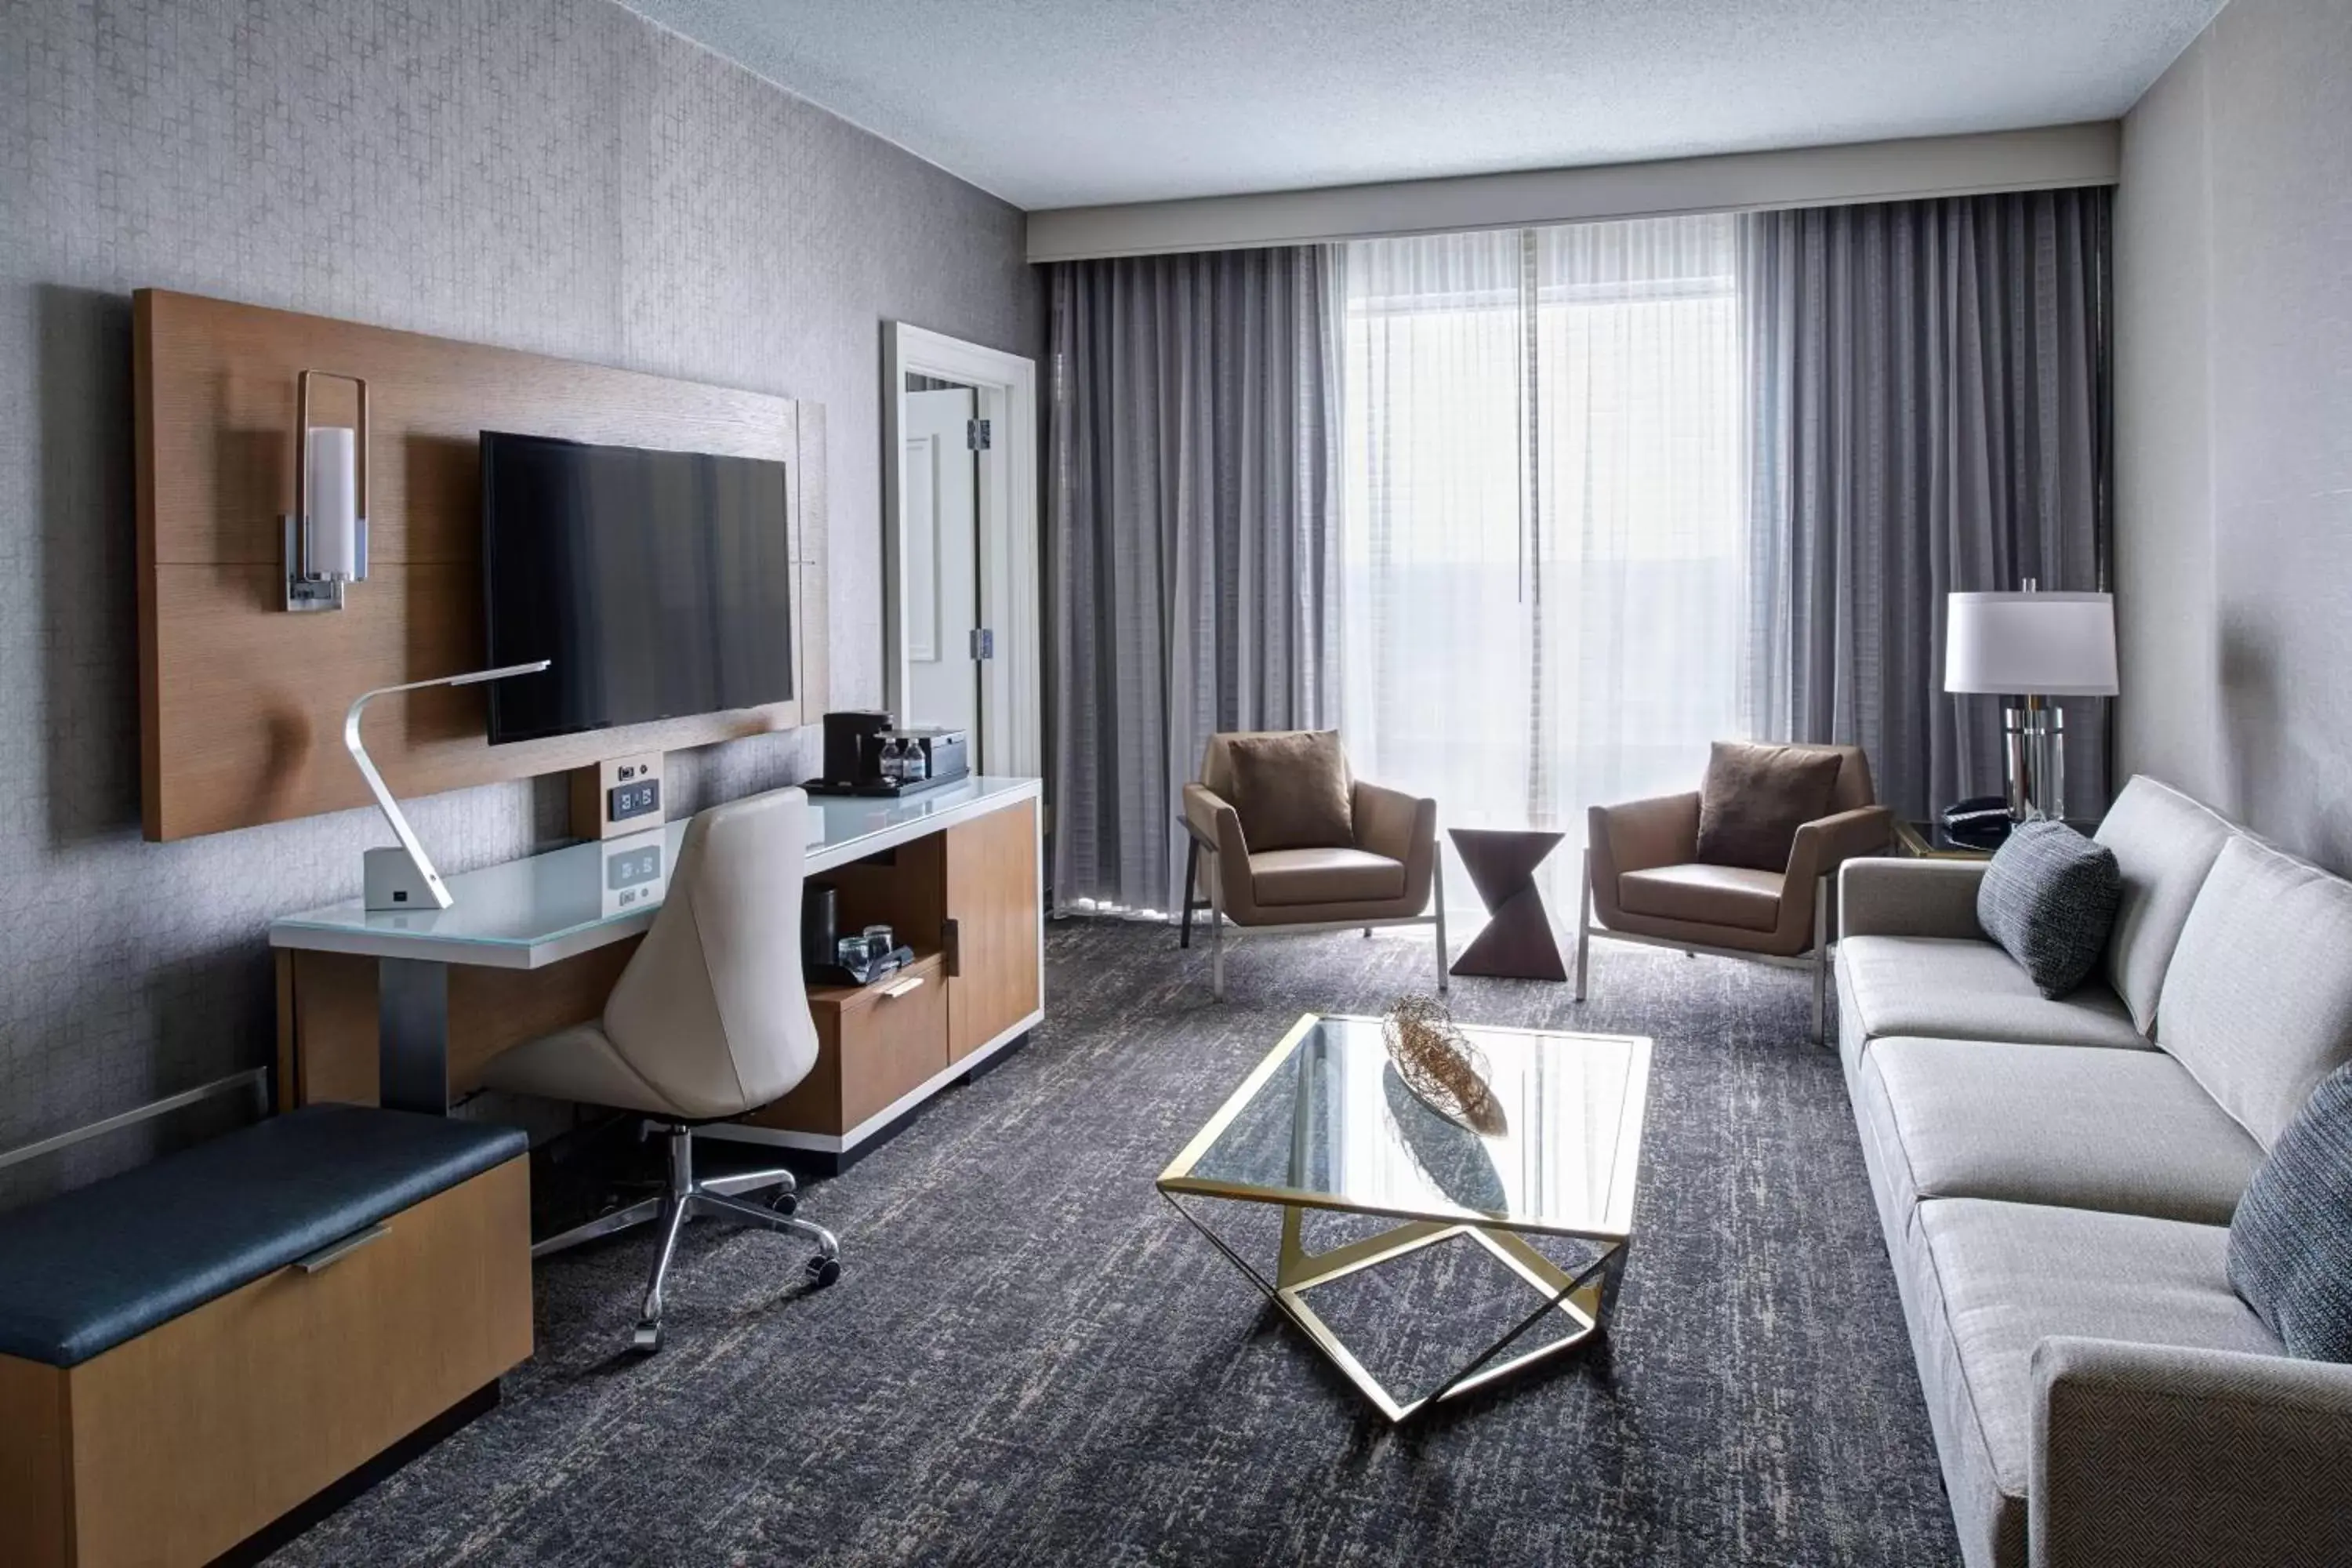 Bedroom, Seating Area in Auburn Hills Marriott Pontiac